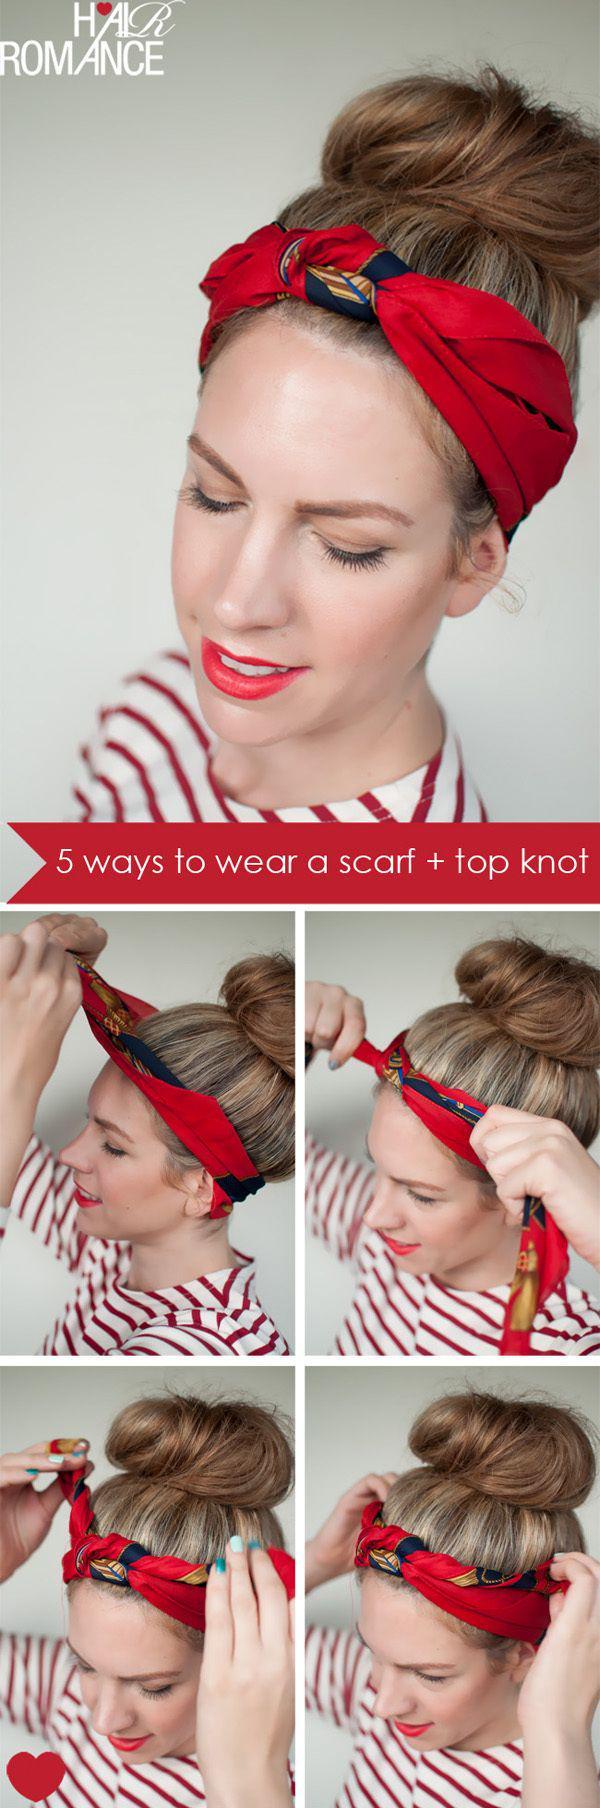 รูปภาพ:http://hairromance-3df0.kxcdn.com/wp-content/uploads/2012/04/5-ways-scarf-top-knot-hairstyle-headband-tutorial.jpg